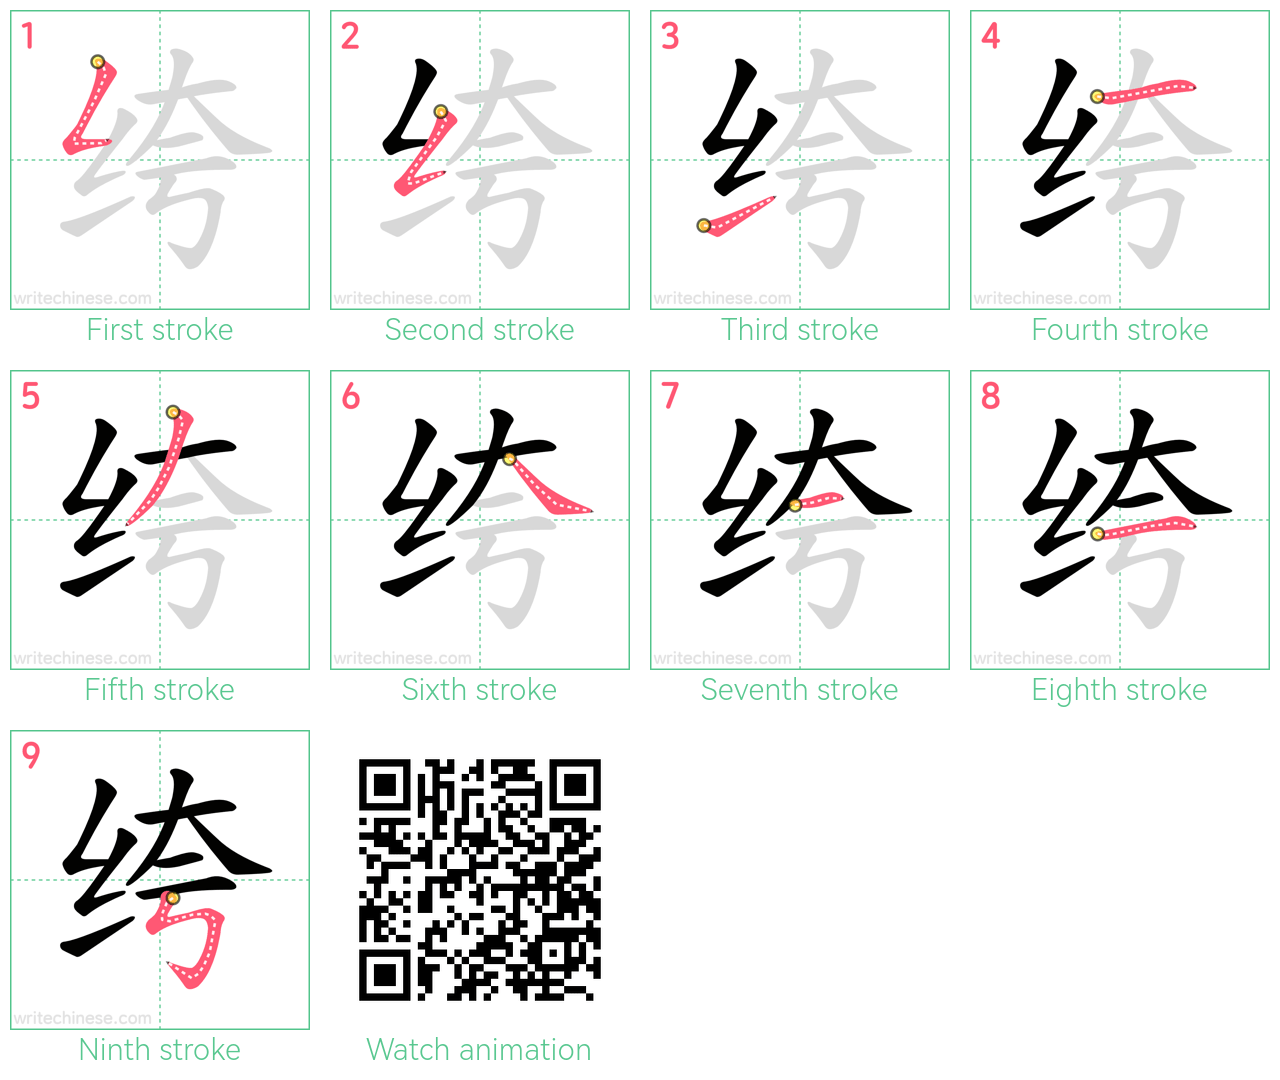 绔 step-by-step stroke order diagrams